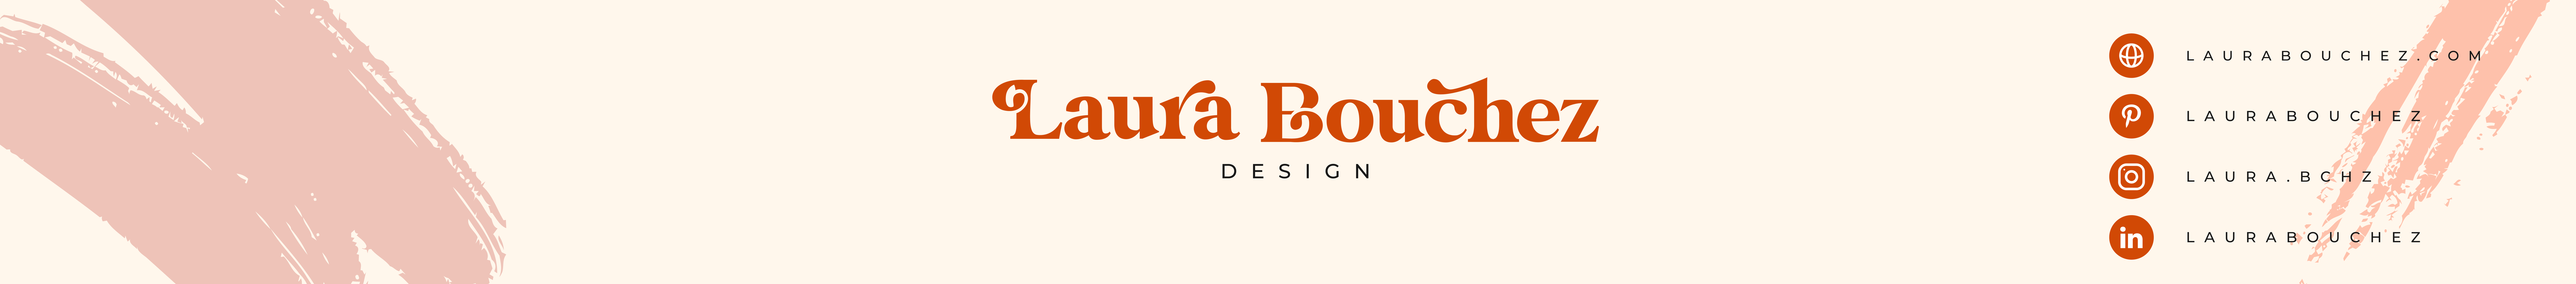 Laura Bouchez's profile banner